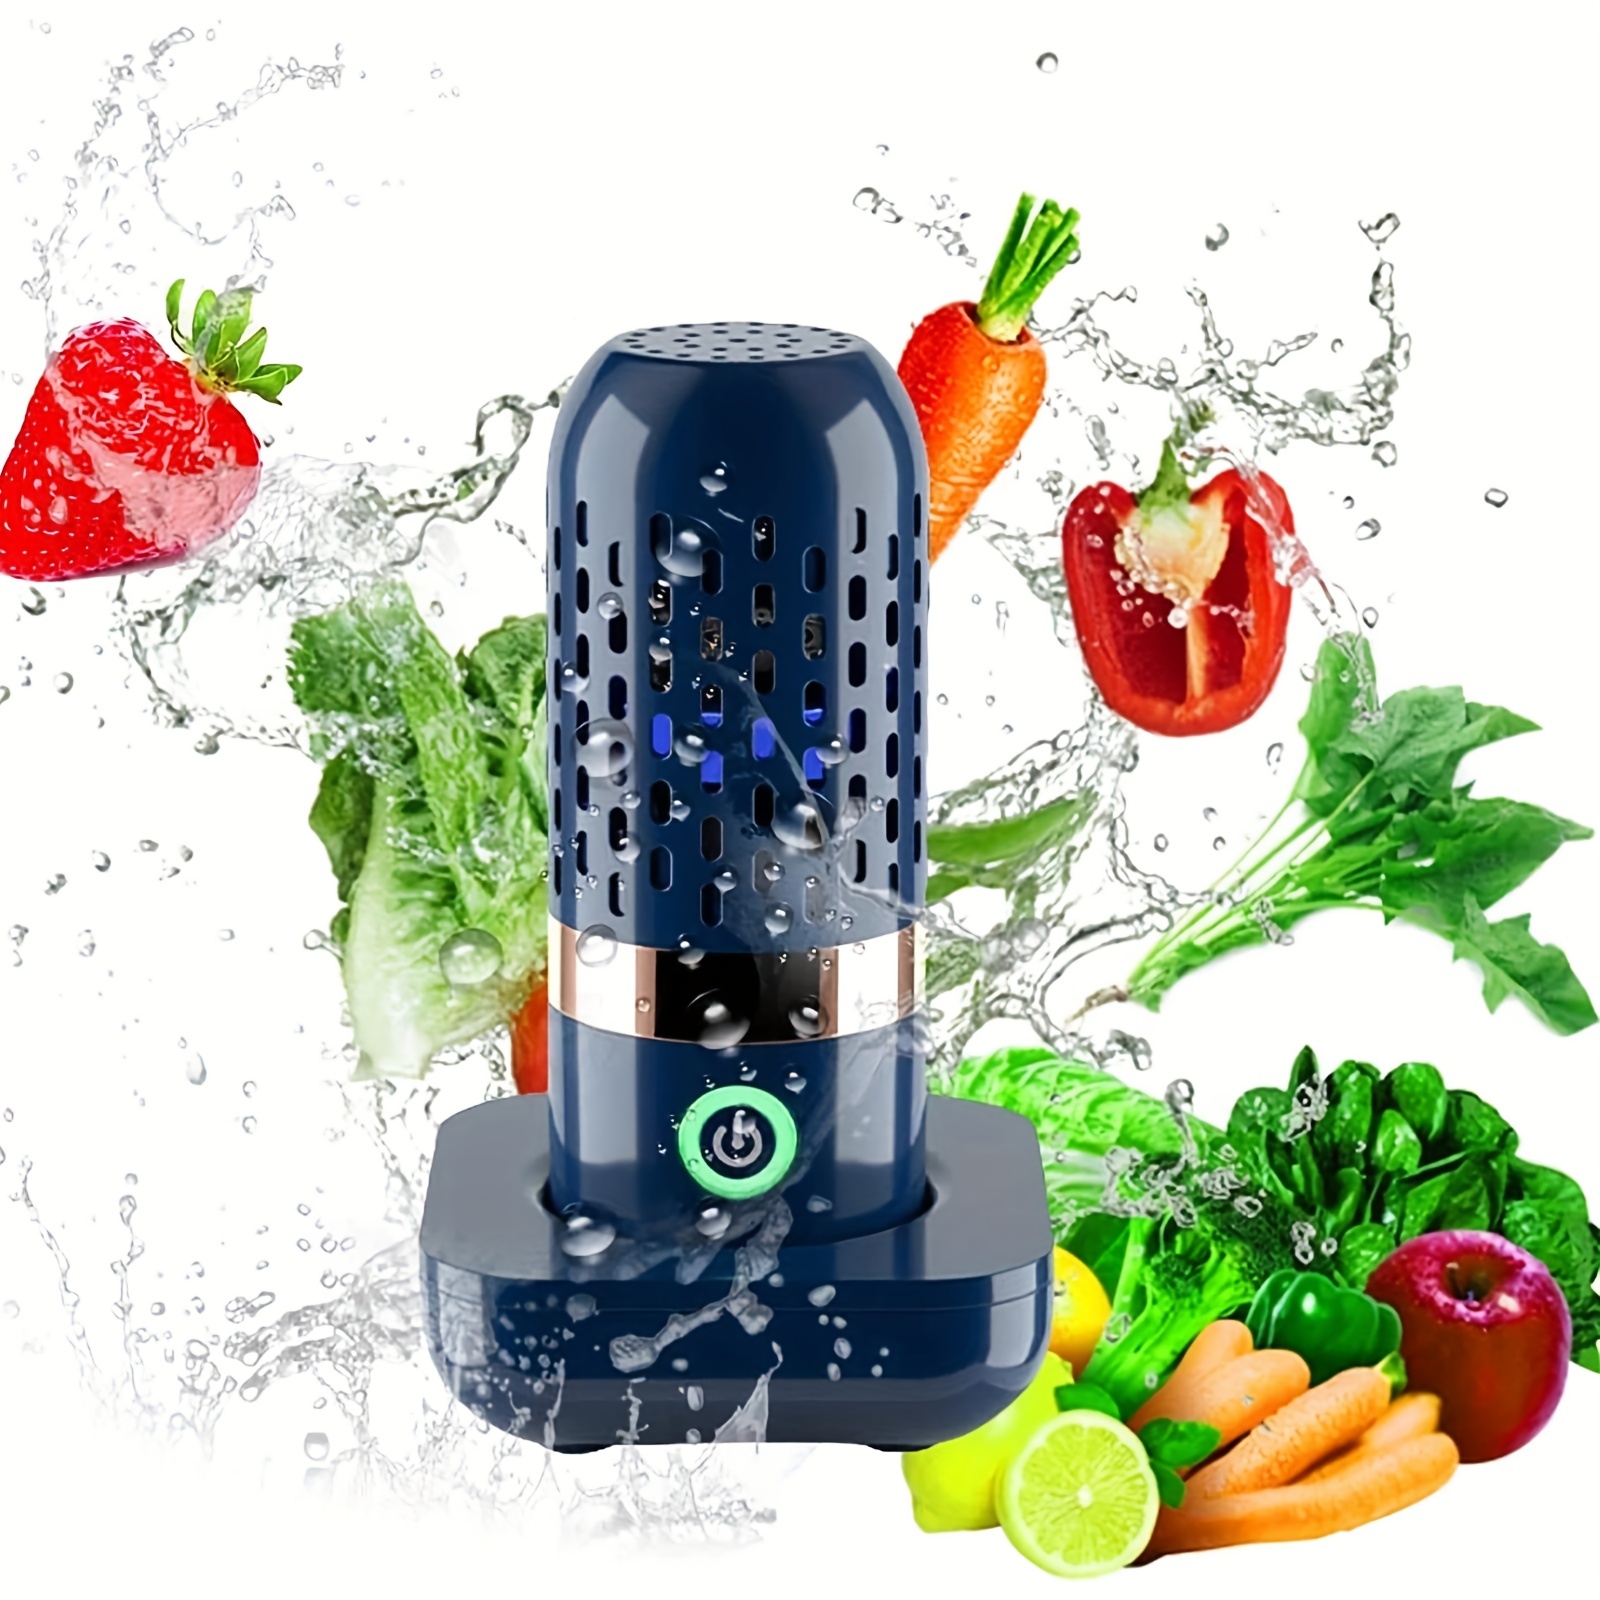 Machine à laver les fruits et légumes en forme de Capsule